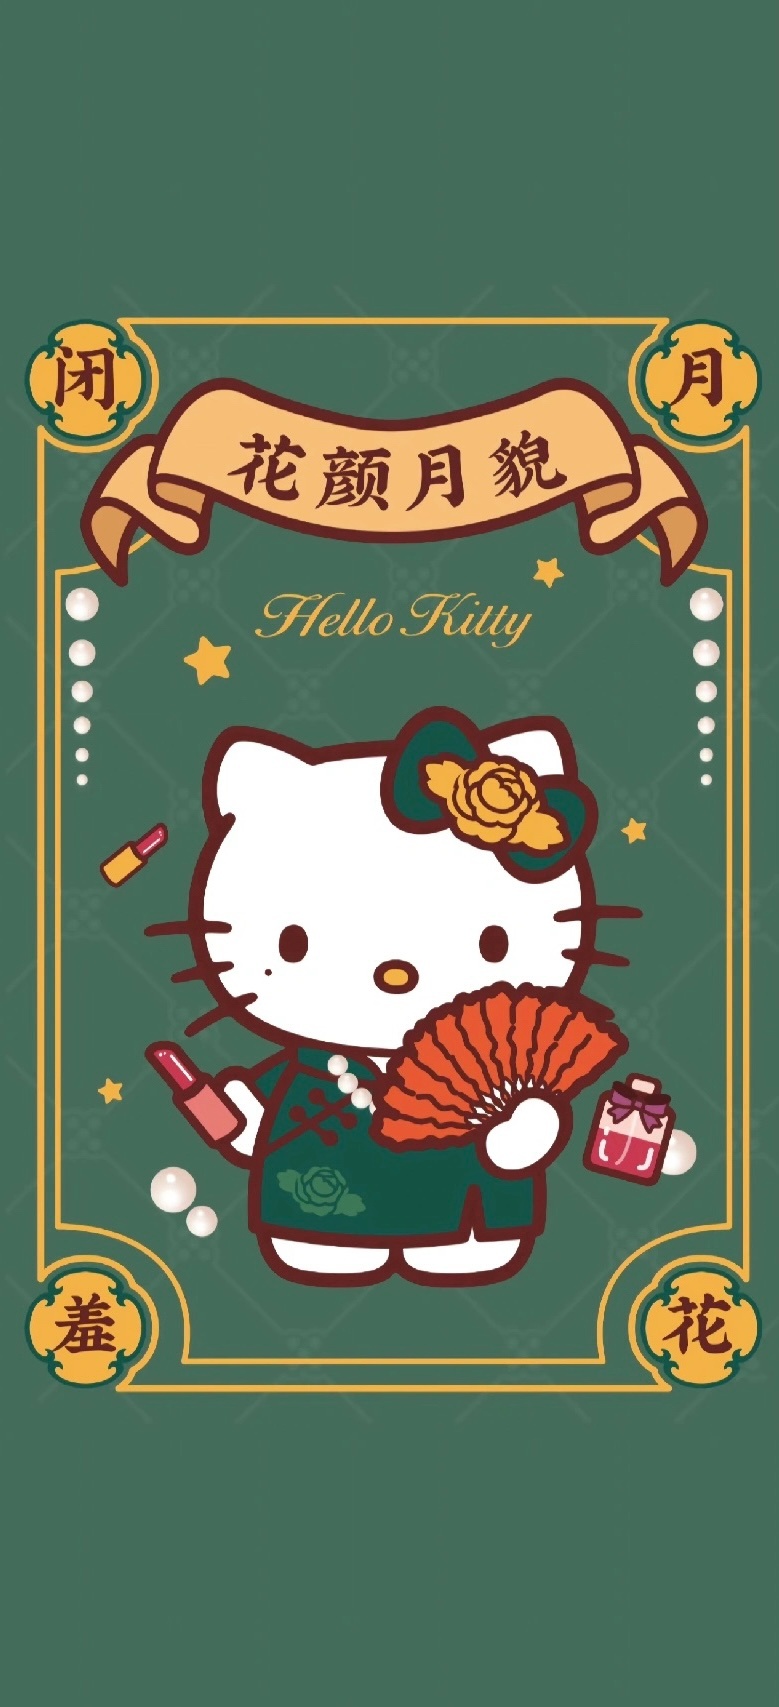 凯蒂猫新年氛围手机壁纸 Hellokitty国风新春版手机壁纸 三千图片网